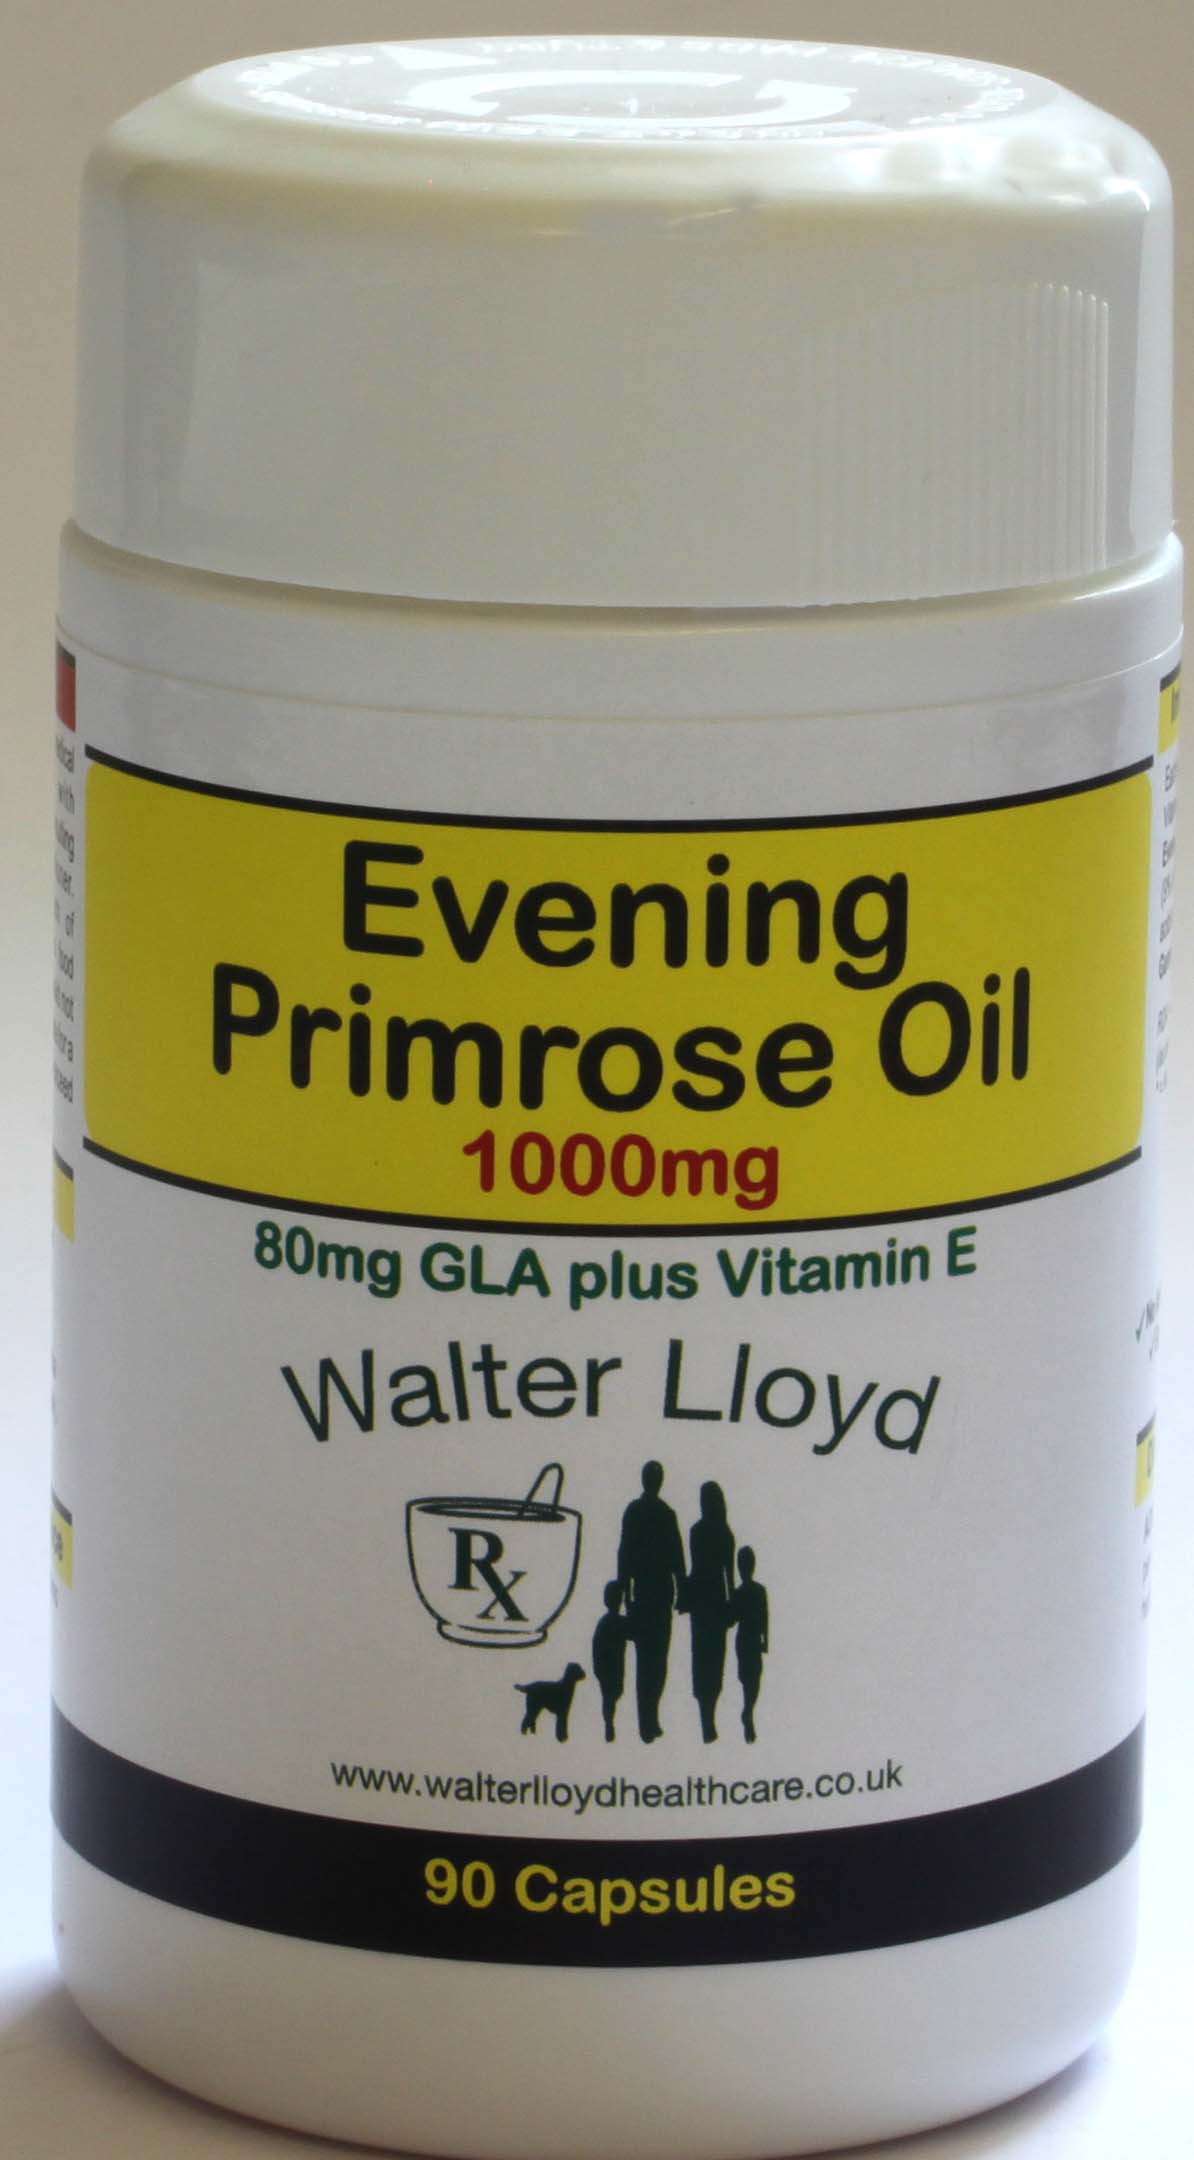 Evening Primrose Oil 1000mg - 90 capsules